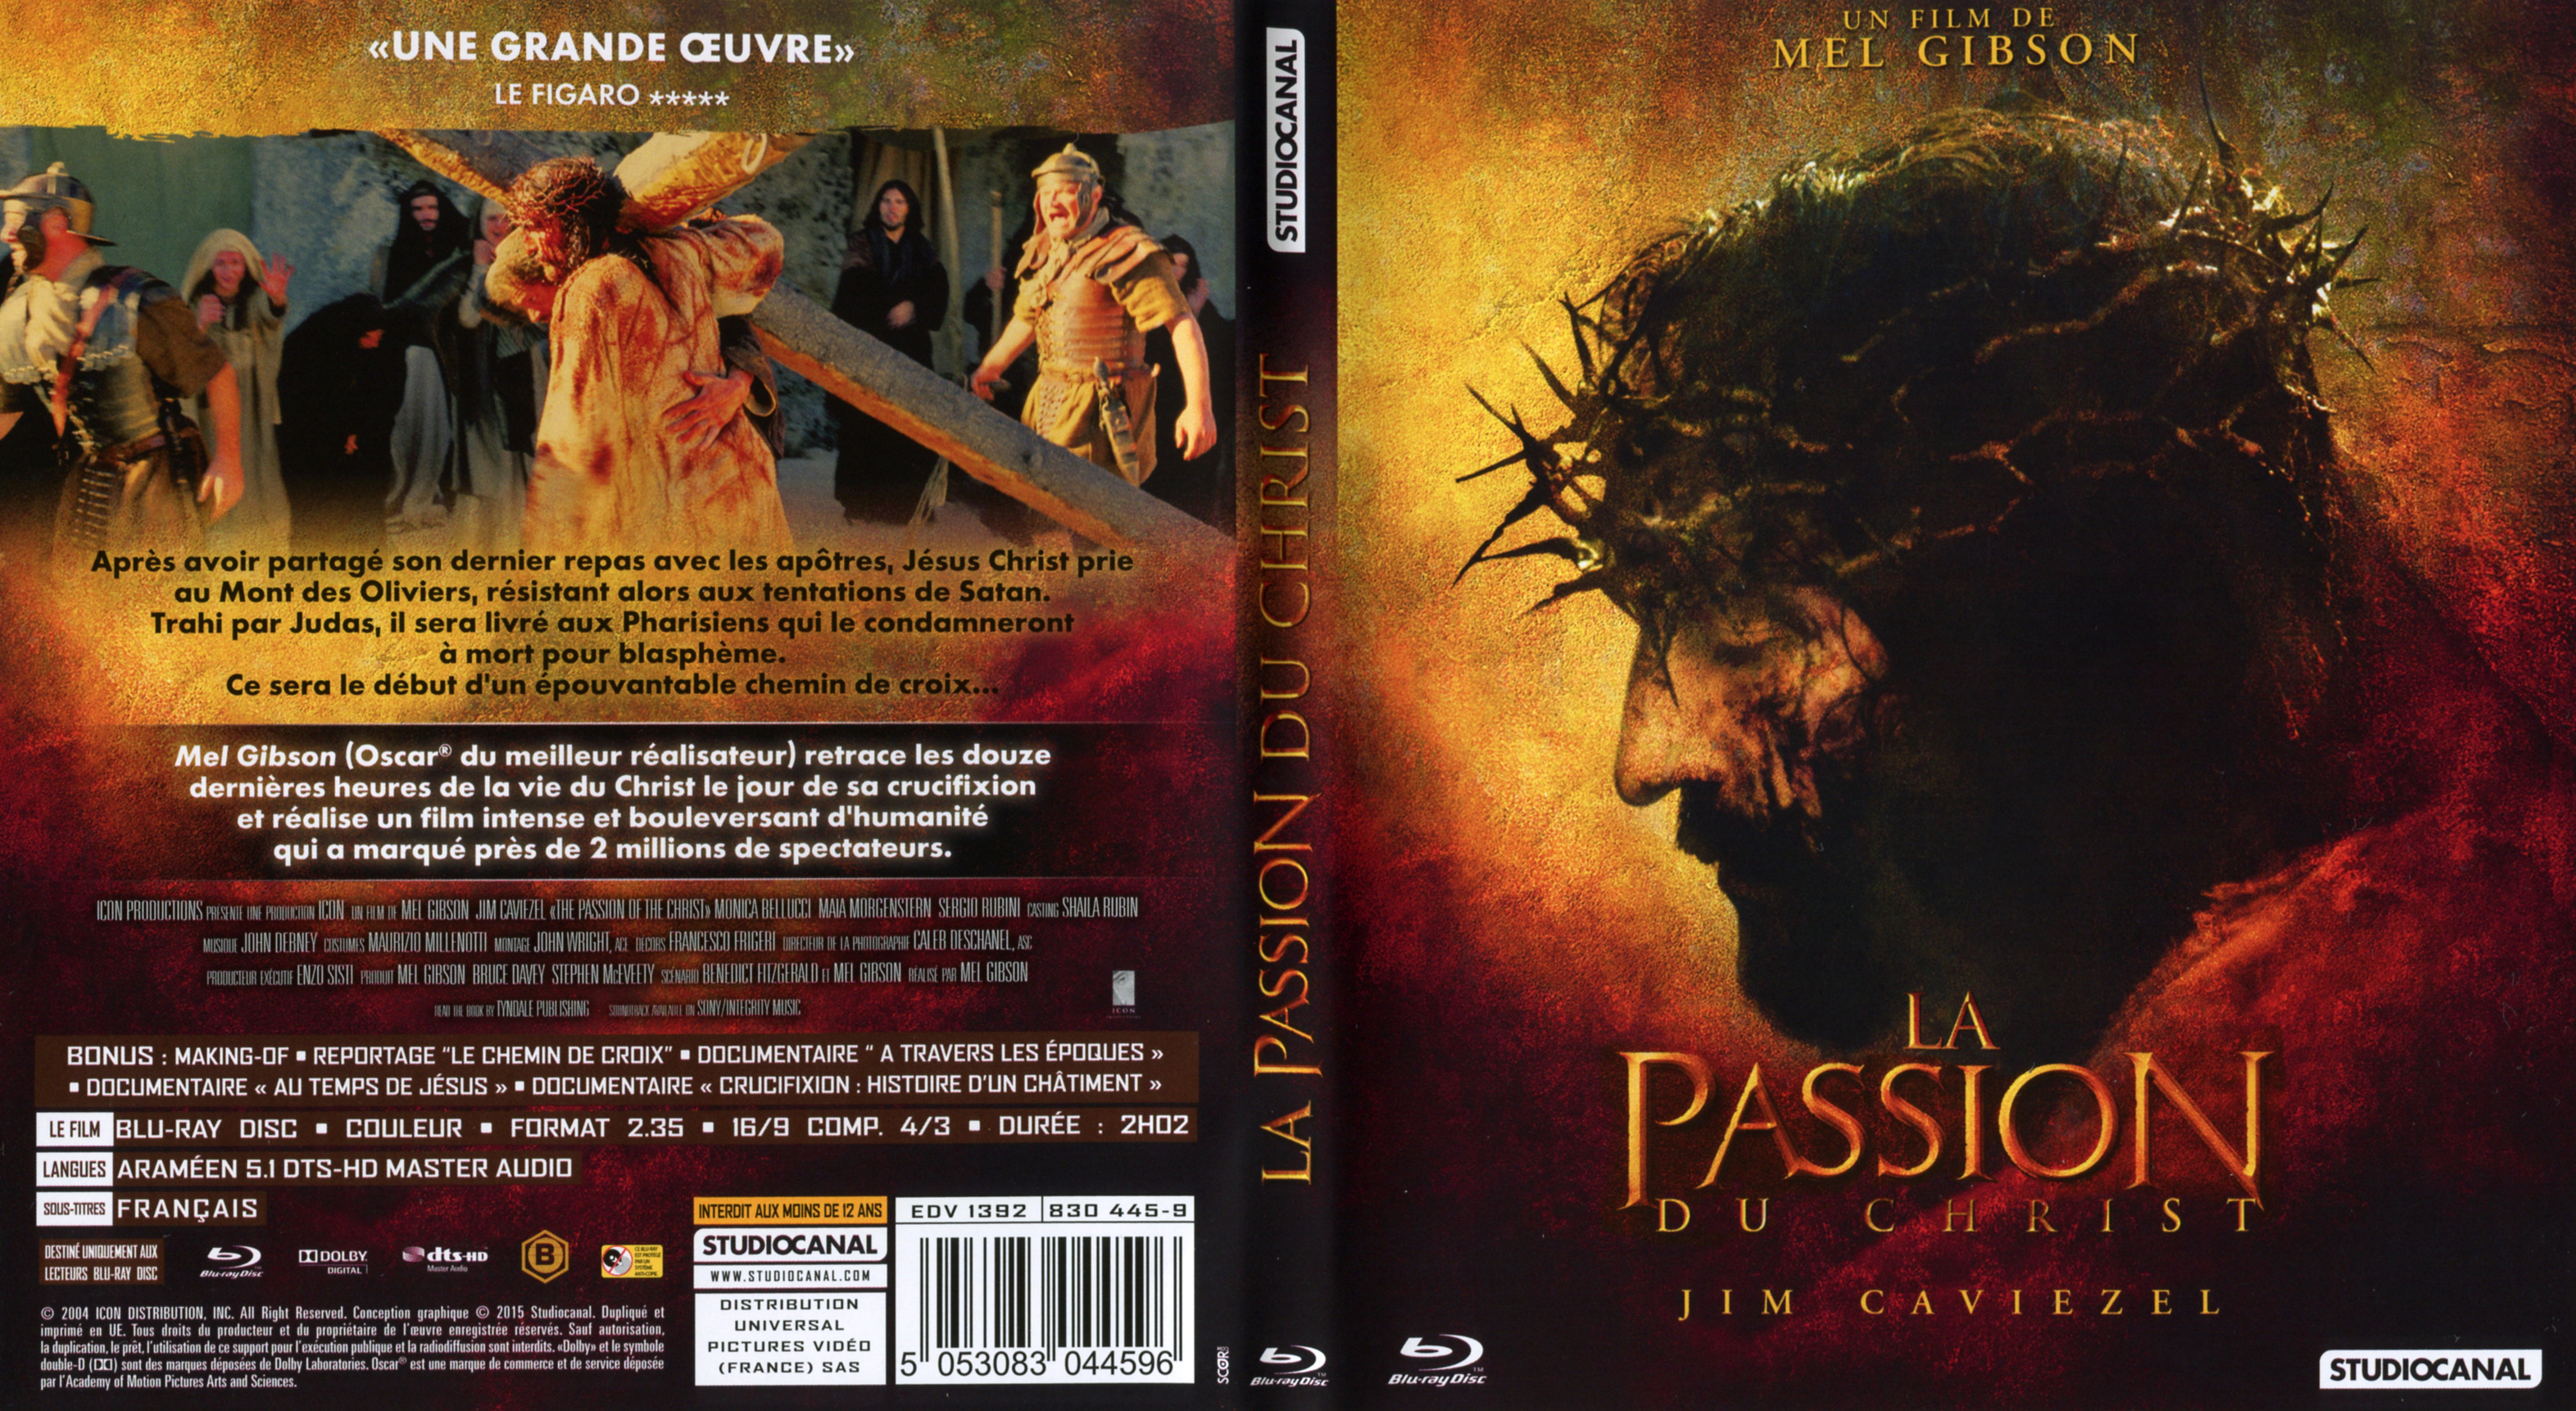 Jaquette DVD La passion du Christ (BLU-RAY) v2